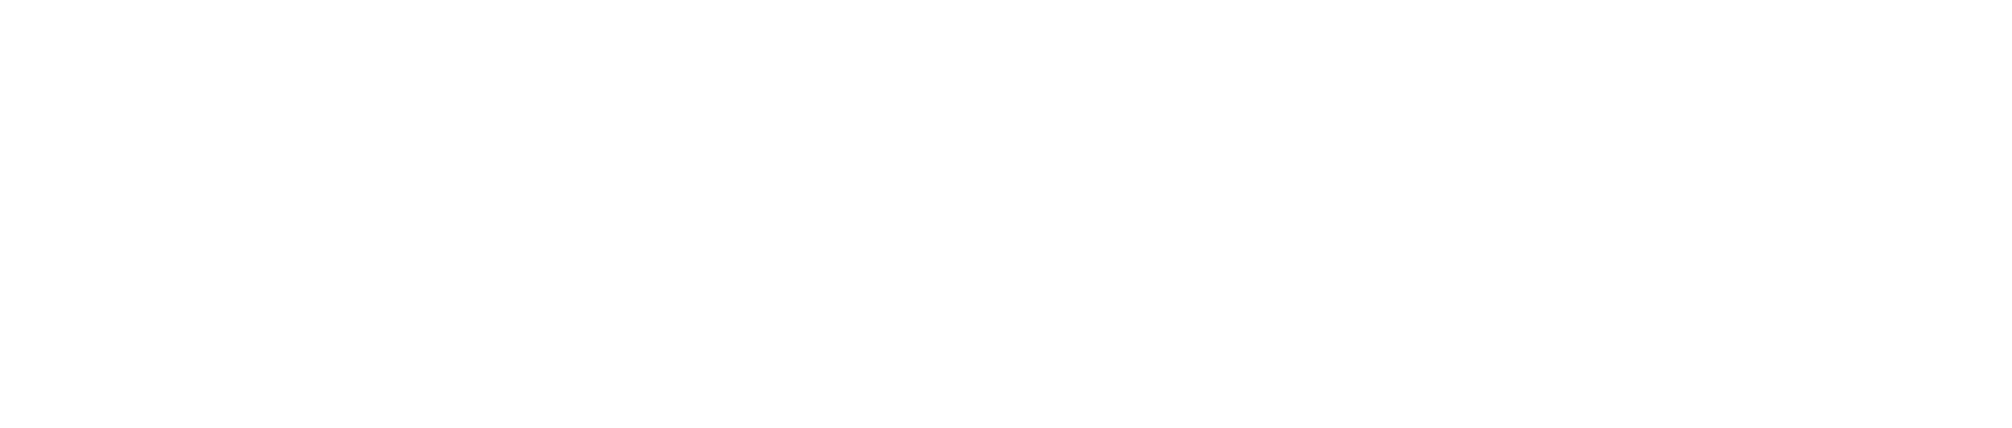 ESEC Logo ELMEA_ORIZZ - Copia